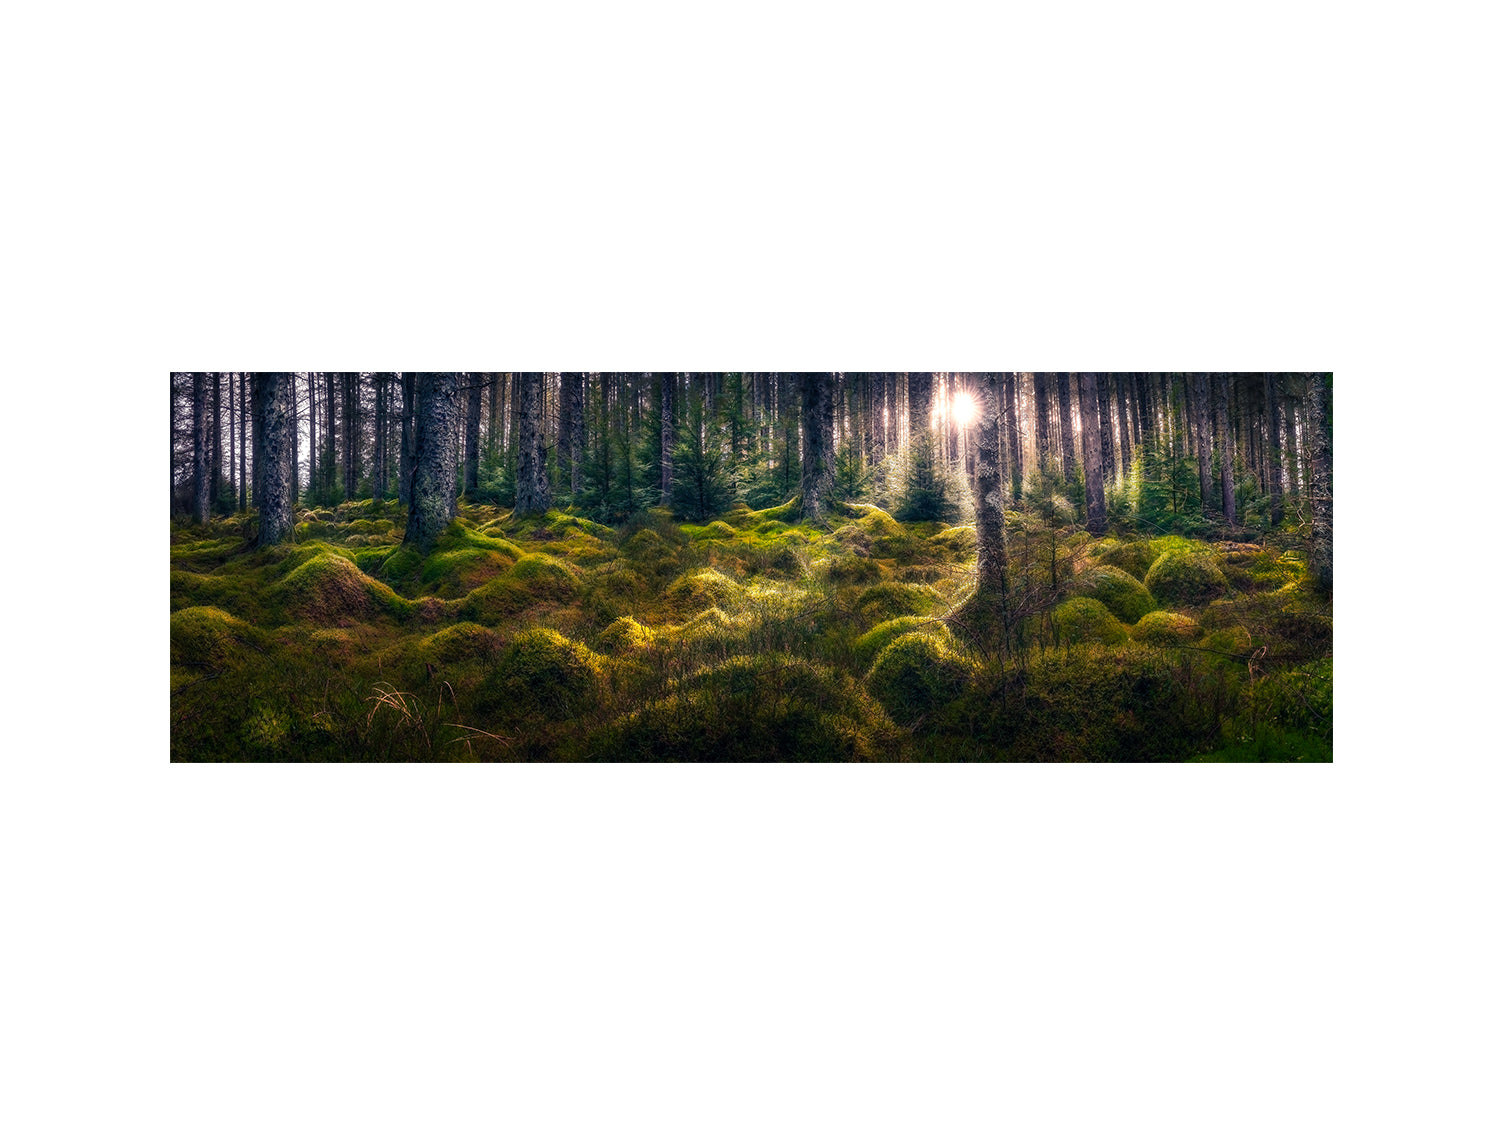 Kielder Forest's "Enchanted"